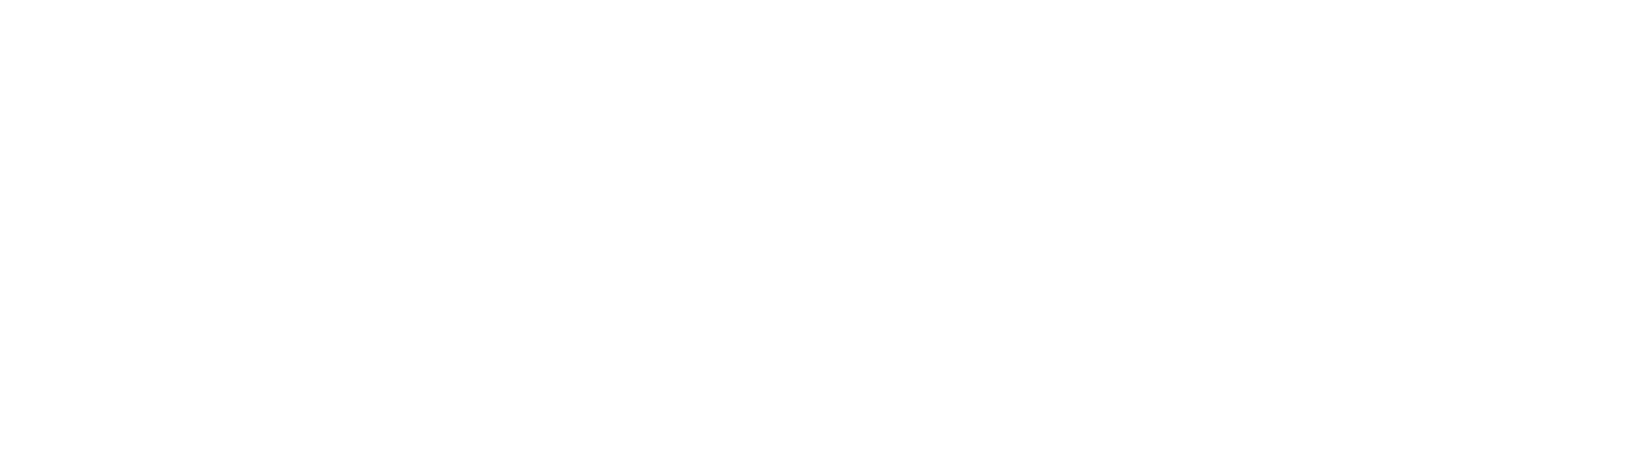 Universal Net Enterprises - Official Logo - White